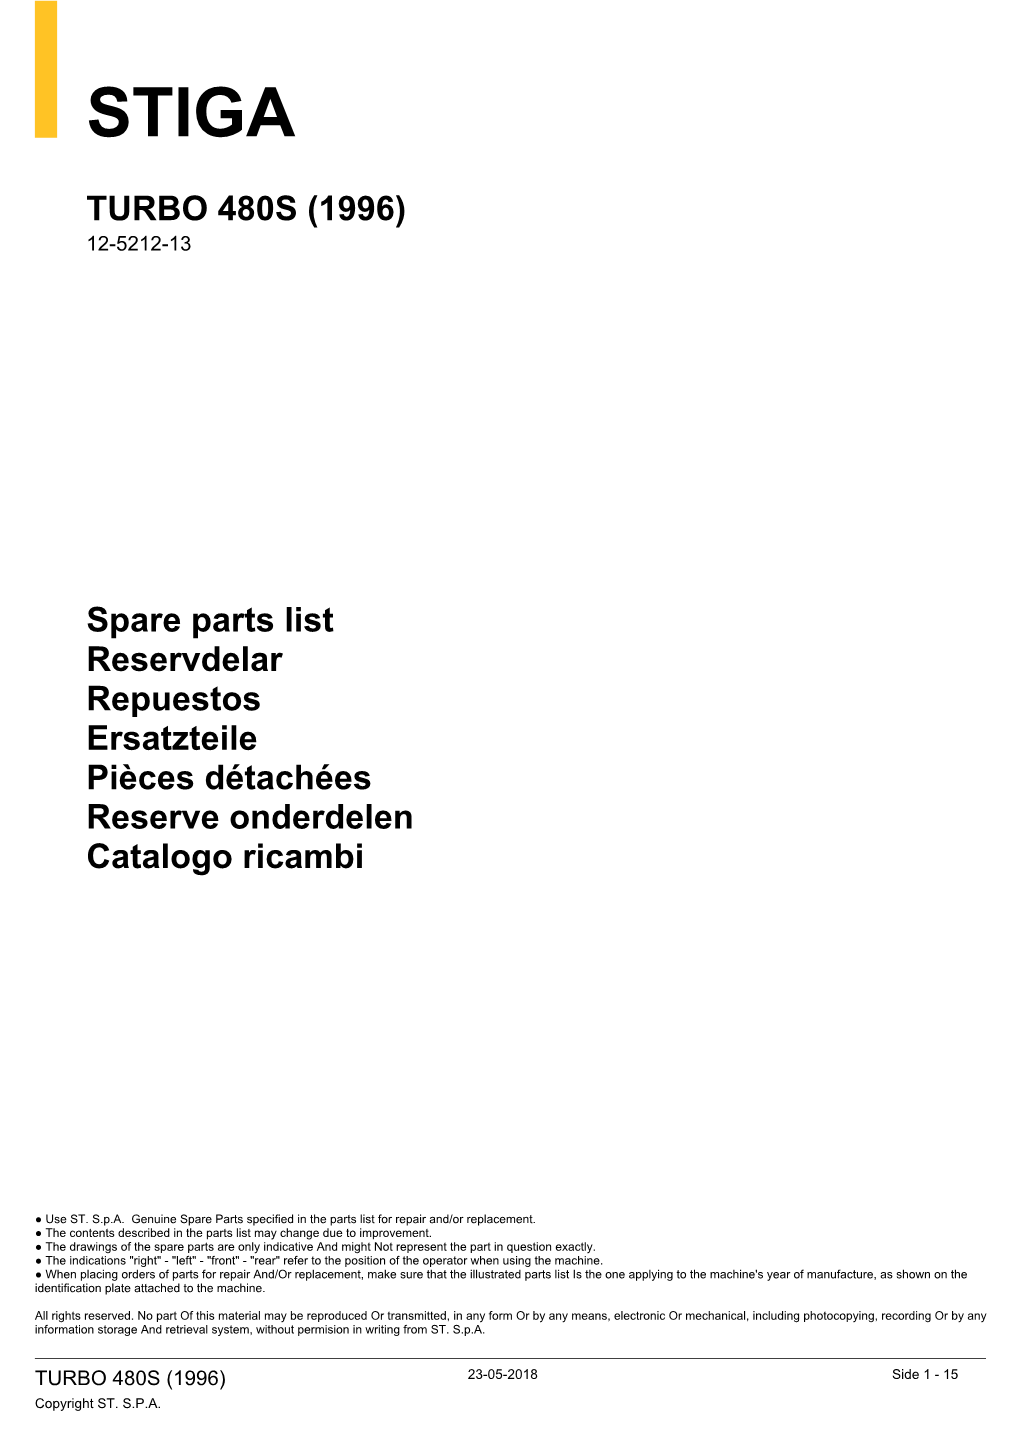 TURBO 480S (1996) Spare Parts List Reservdelar Repuestos Ersatzteile